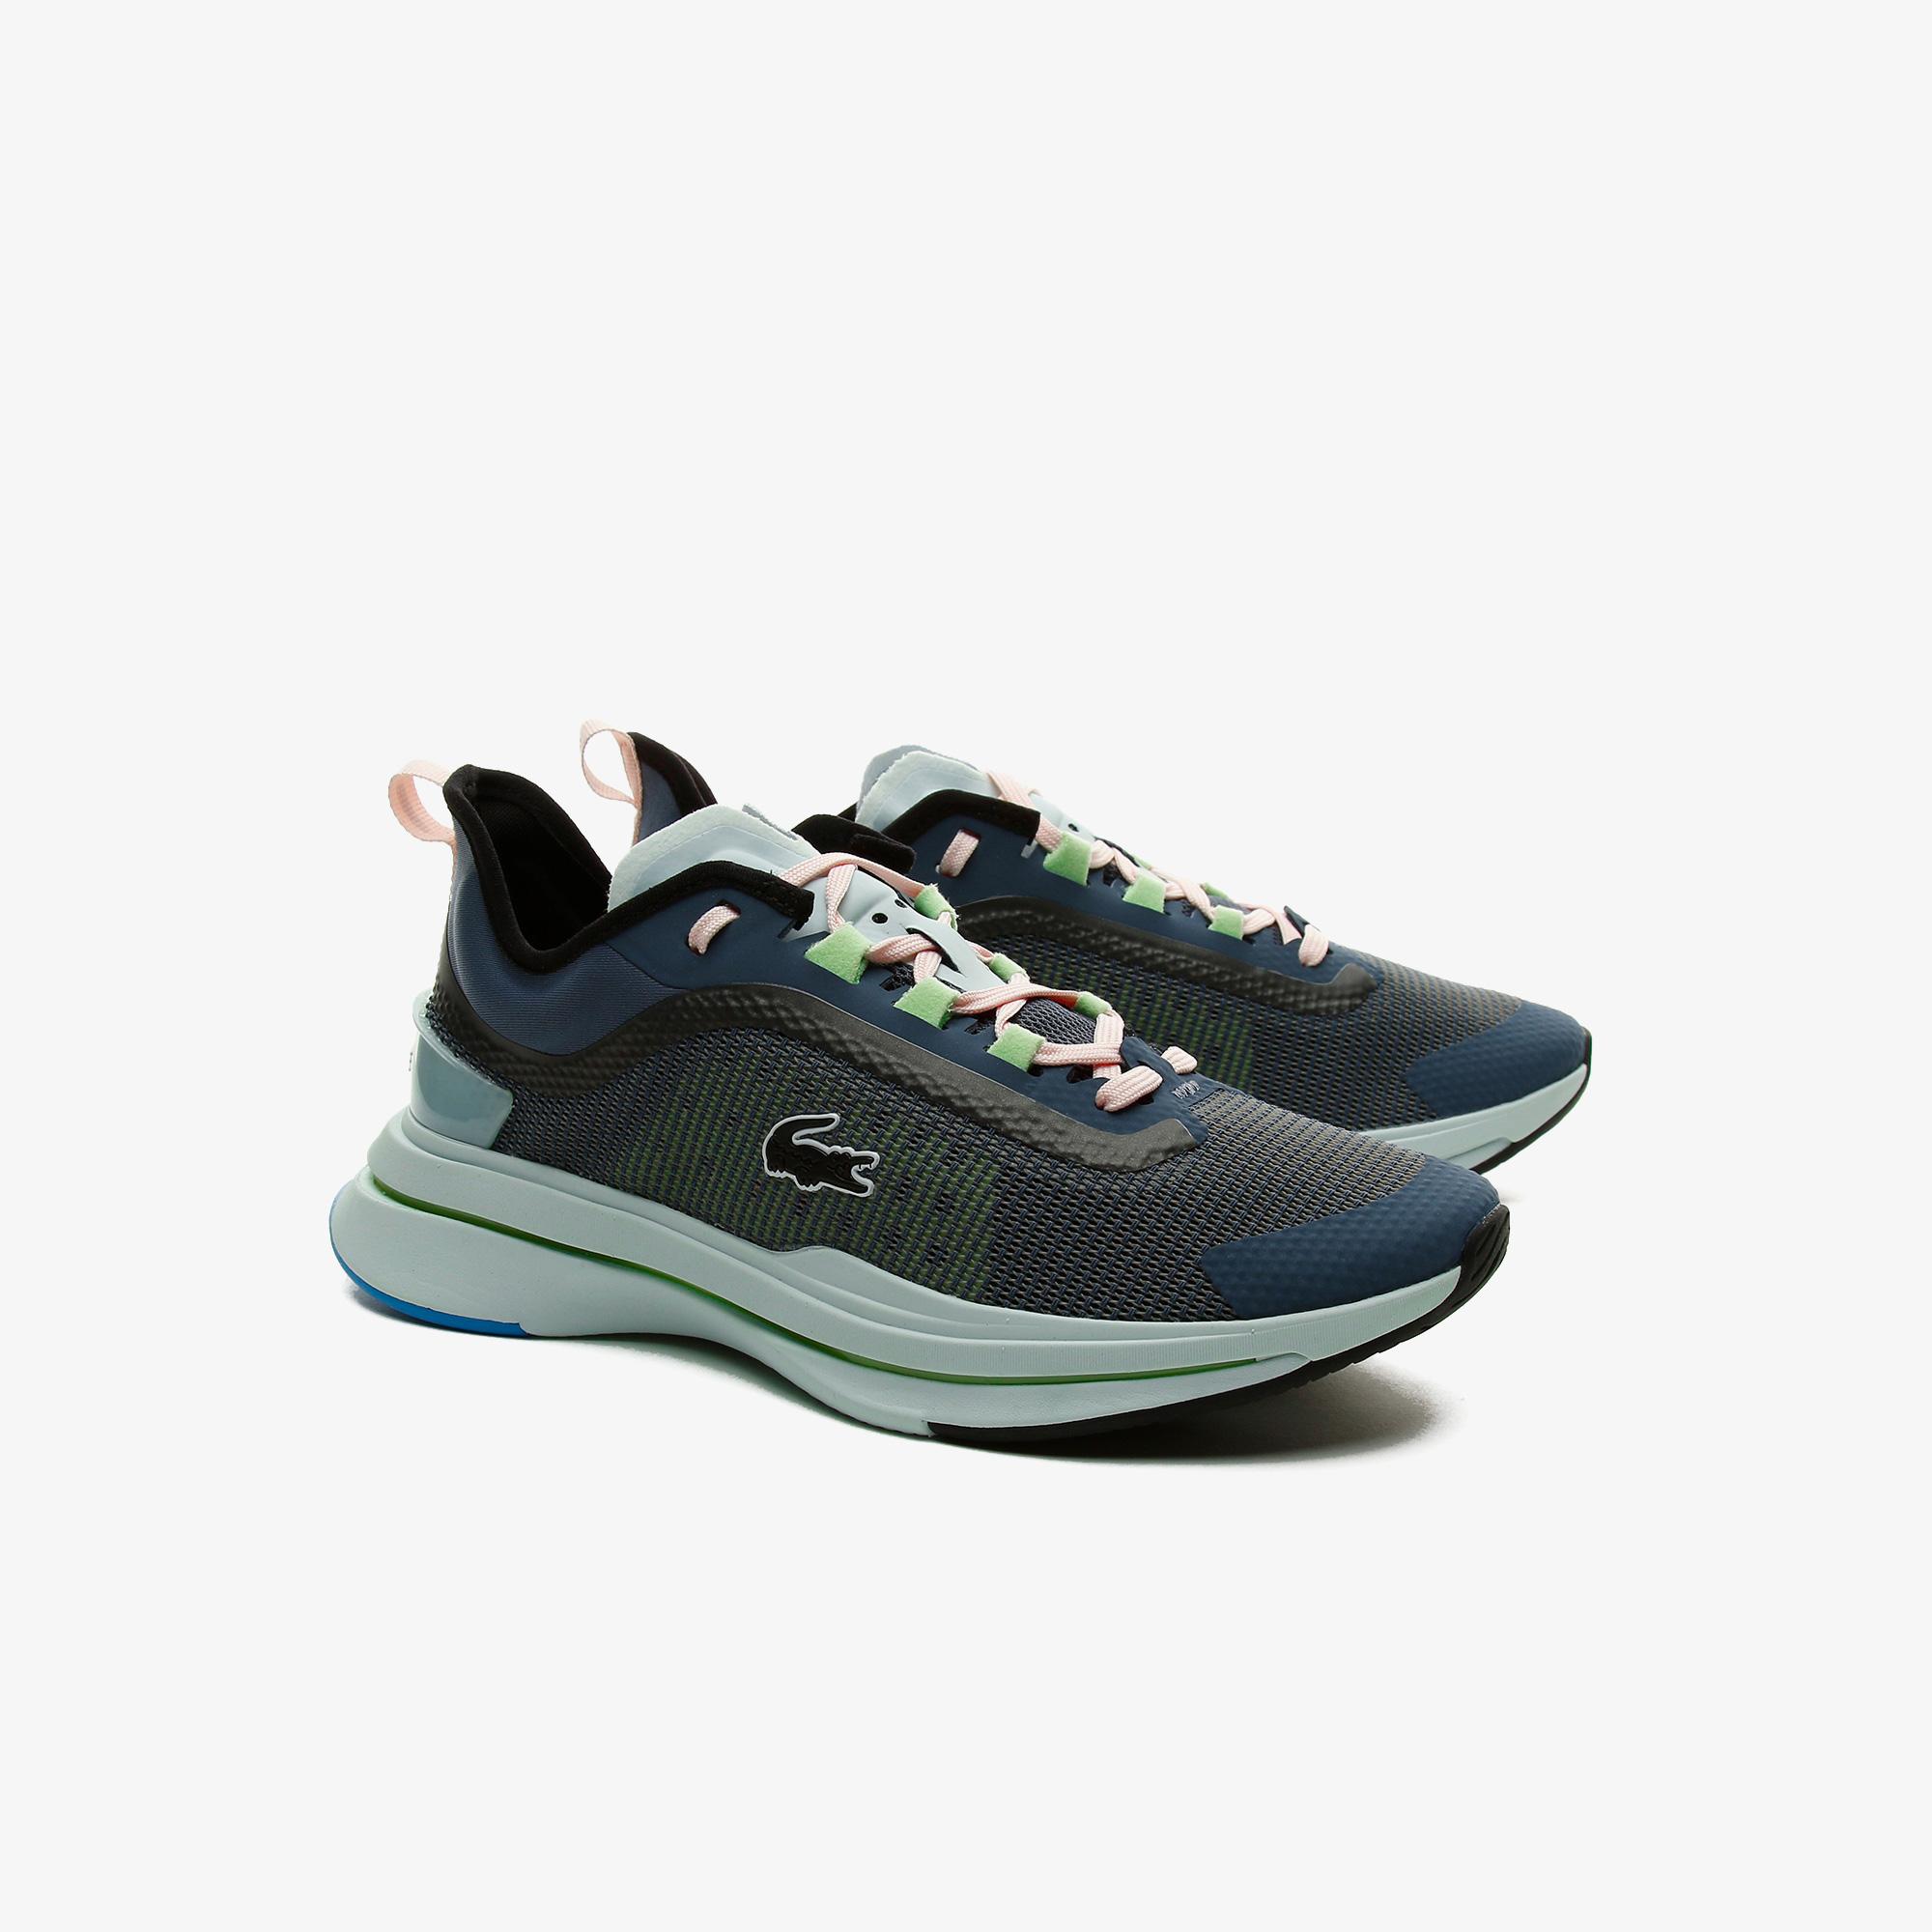 Lacoste Run Spin Ultra 0921 1 Sfa Kadın Siyah - Mavi Sneaker. 3